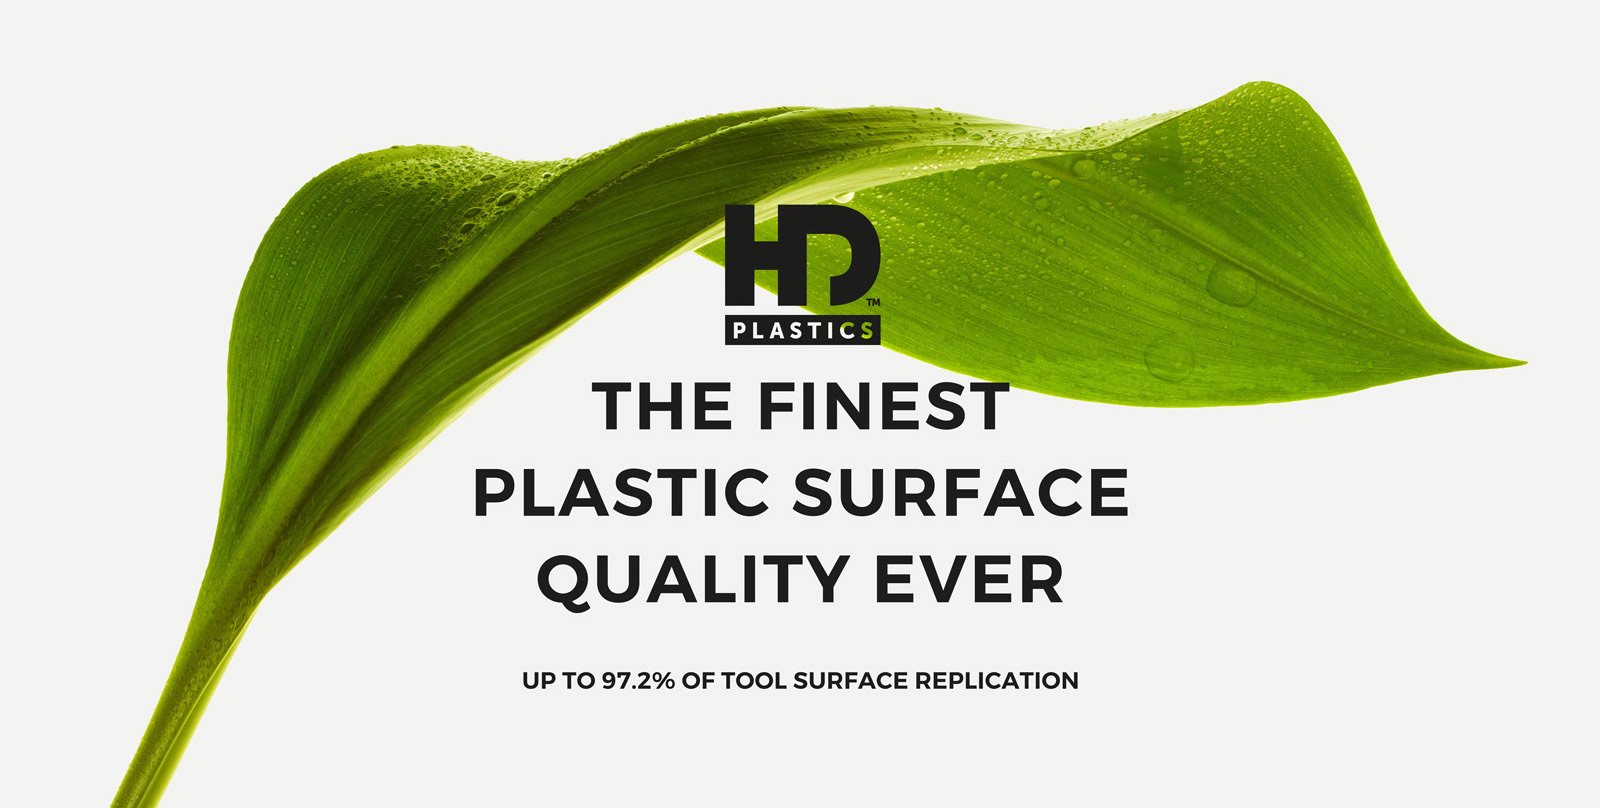 Green Leaf and HD Plastics